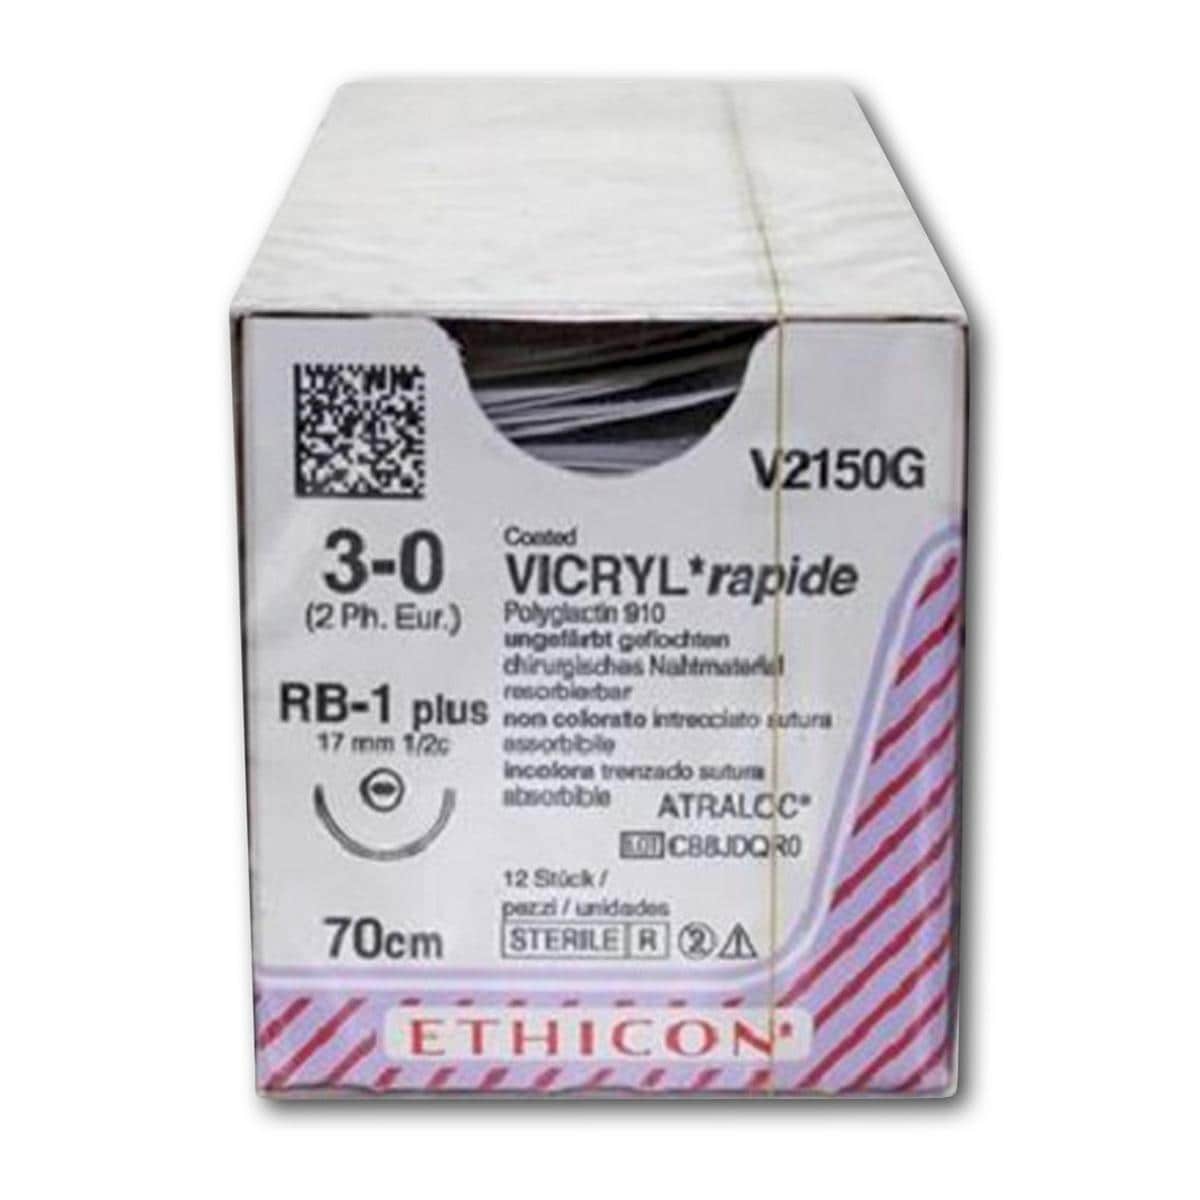 Vicryl Rapide - lengte 70cm, 12 stuks 3/0, naald RB-1 - V2150G